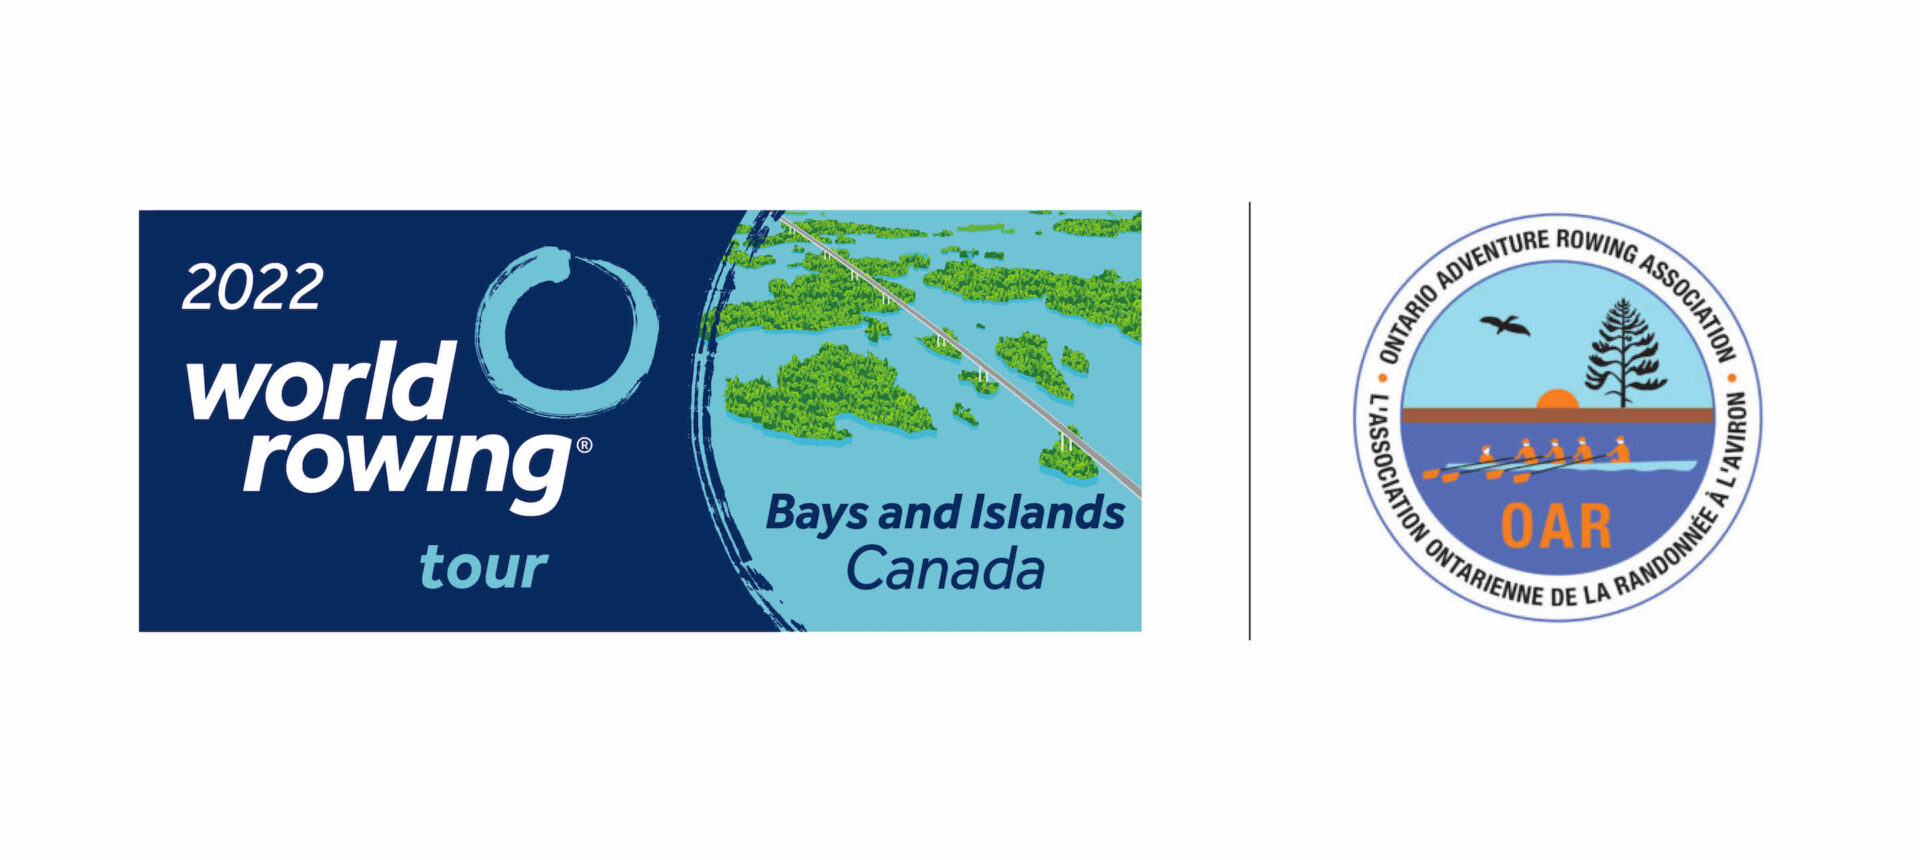 Tournée World Rowing 2022 : Baie de Quinte et les Mille-Îles